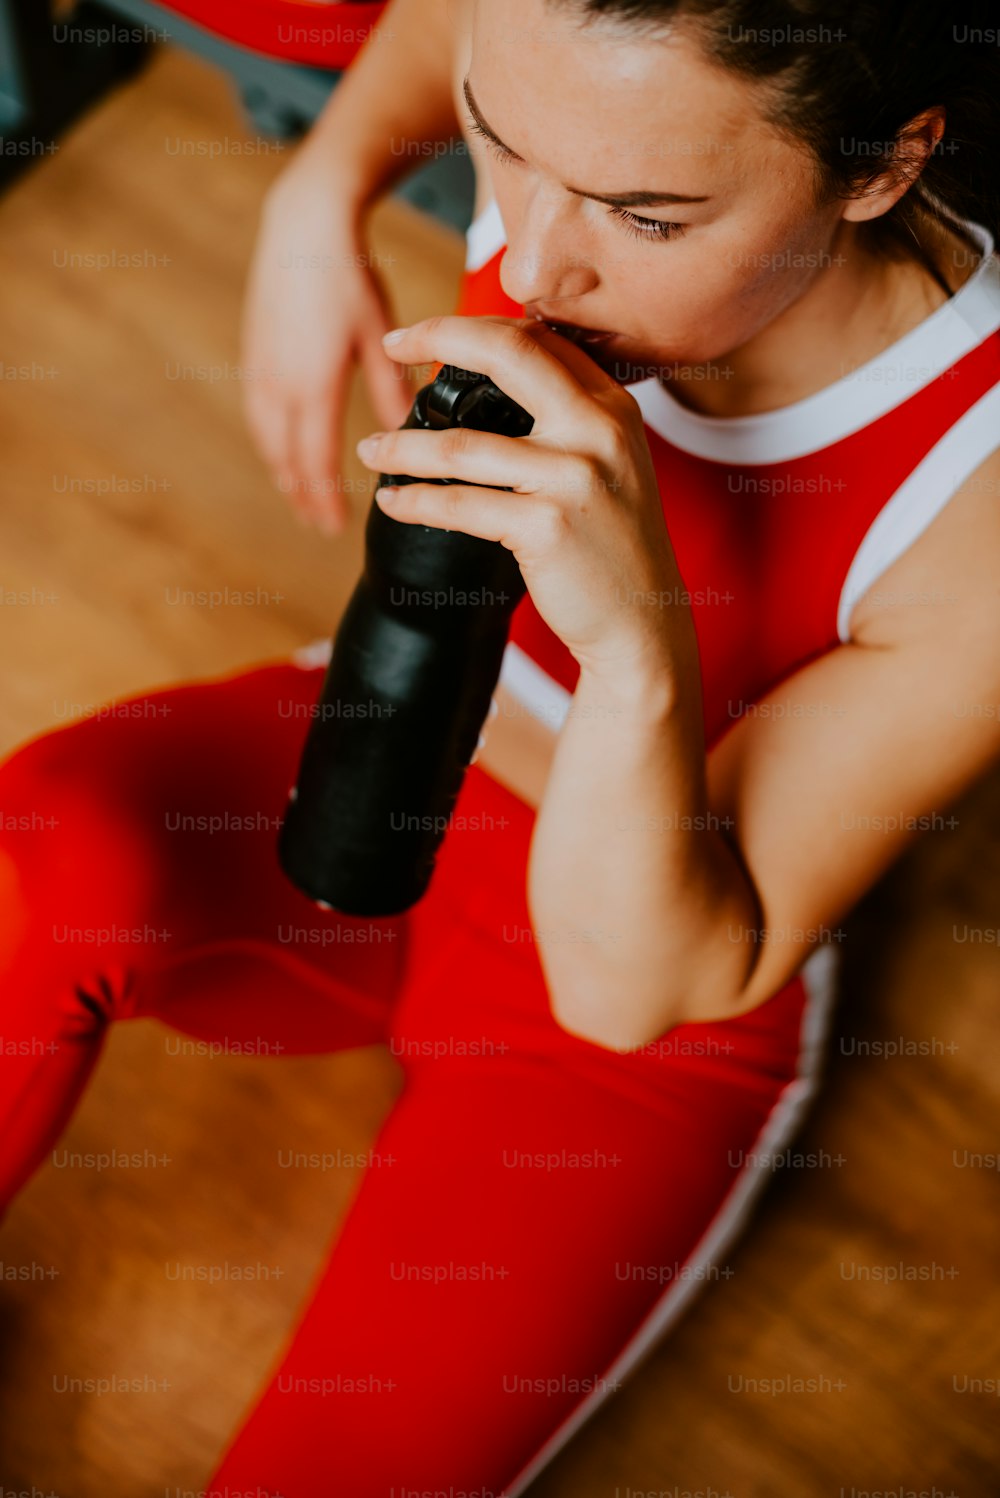 Una mujer sentada en el suelo bebiendo de una botella